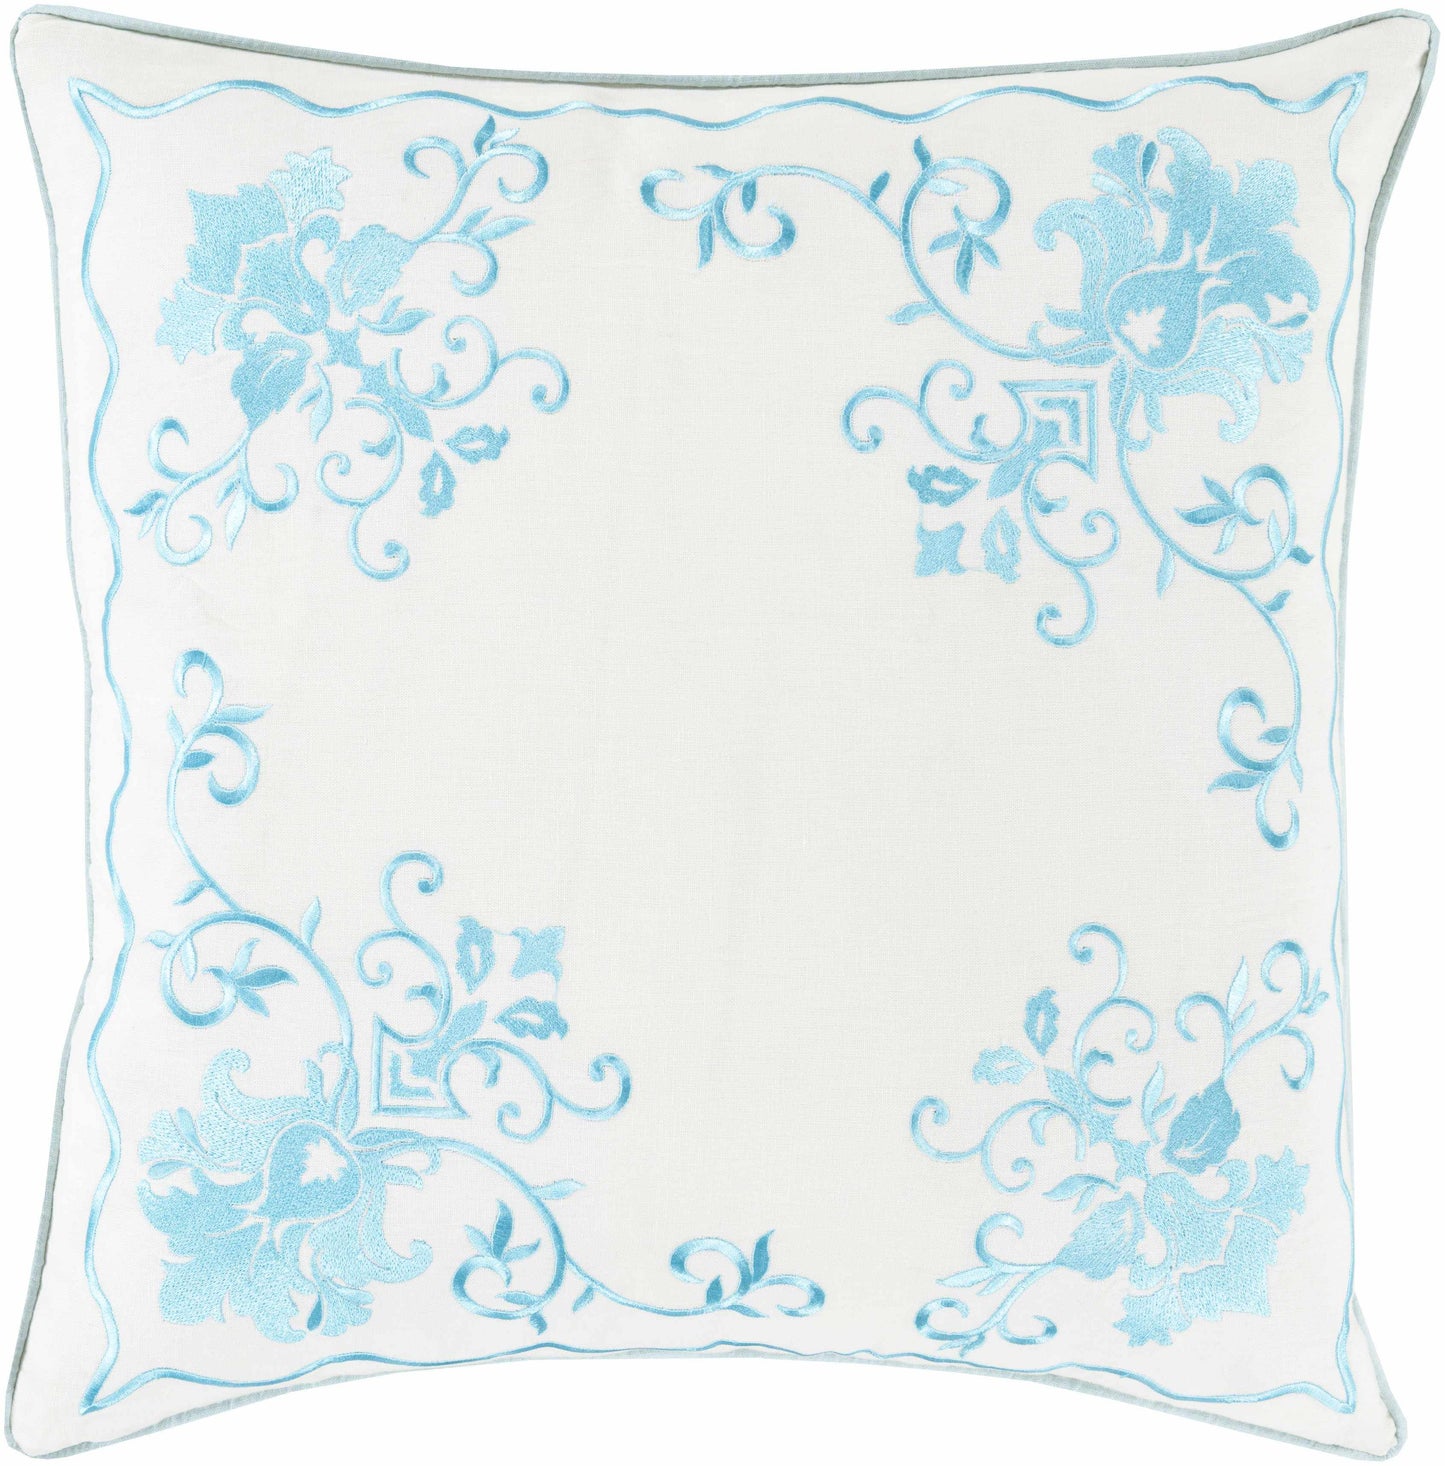 Zottegem Aqua Pillow Cover